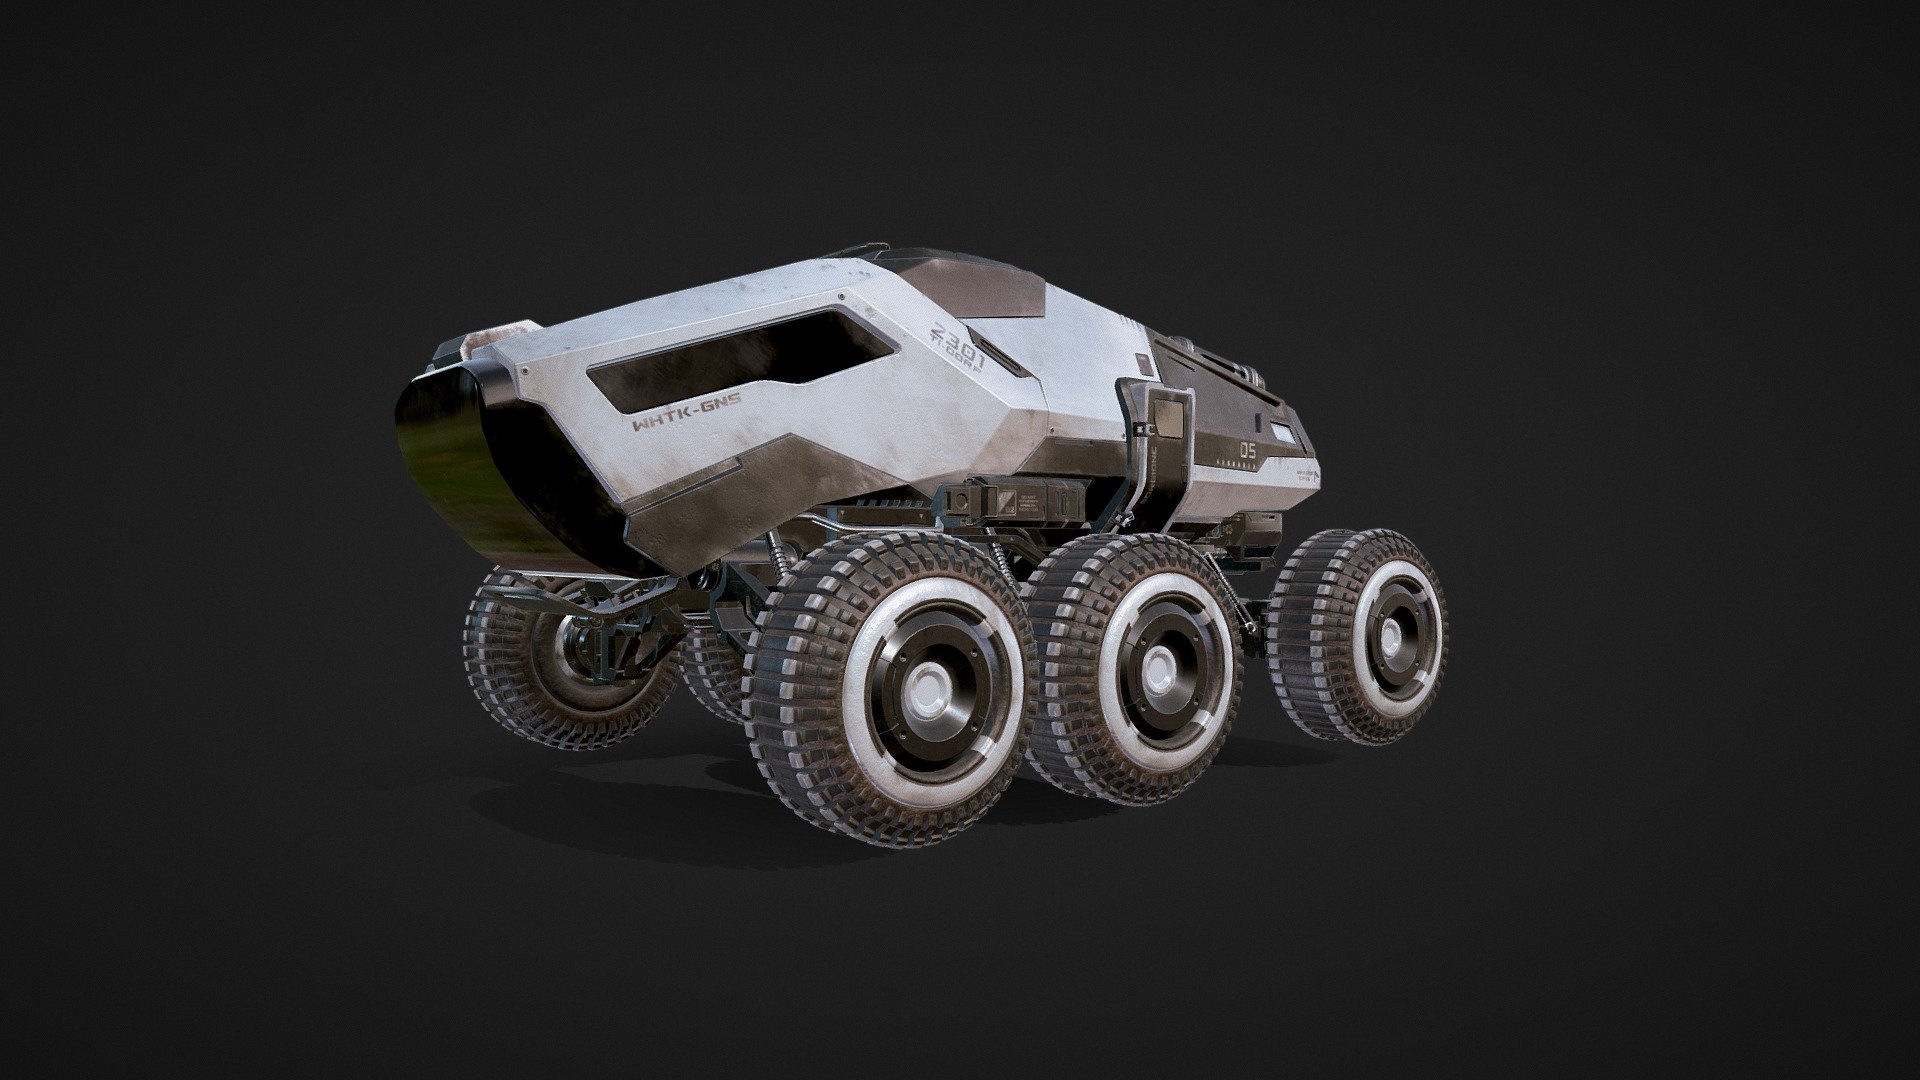 Rover - 3D model by Vitalii.Liulchak [f2f95ce] - Sketchfab